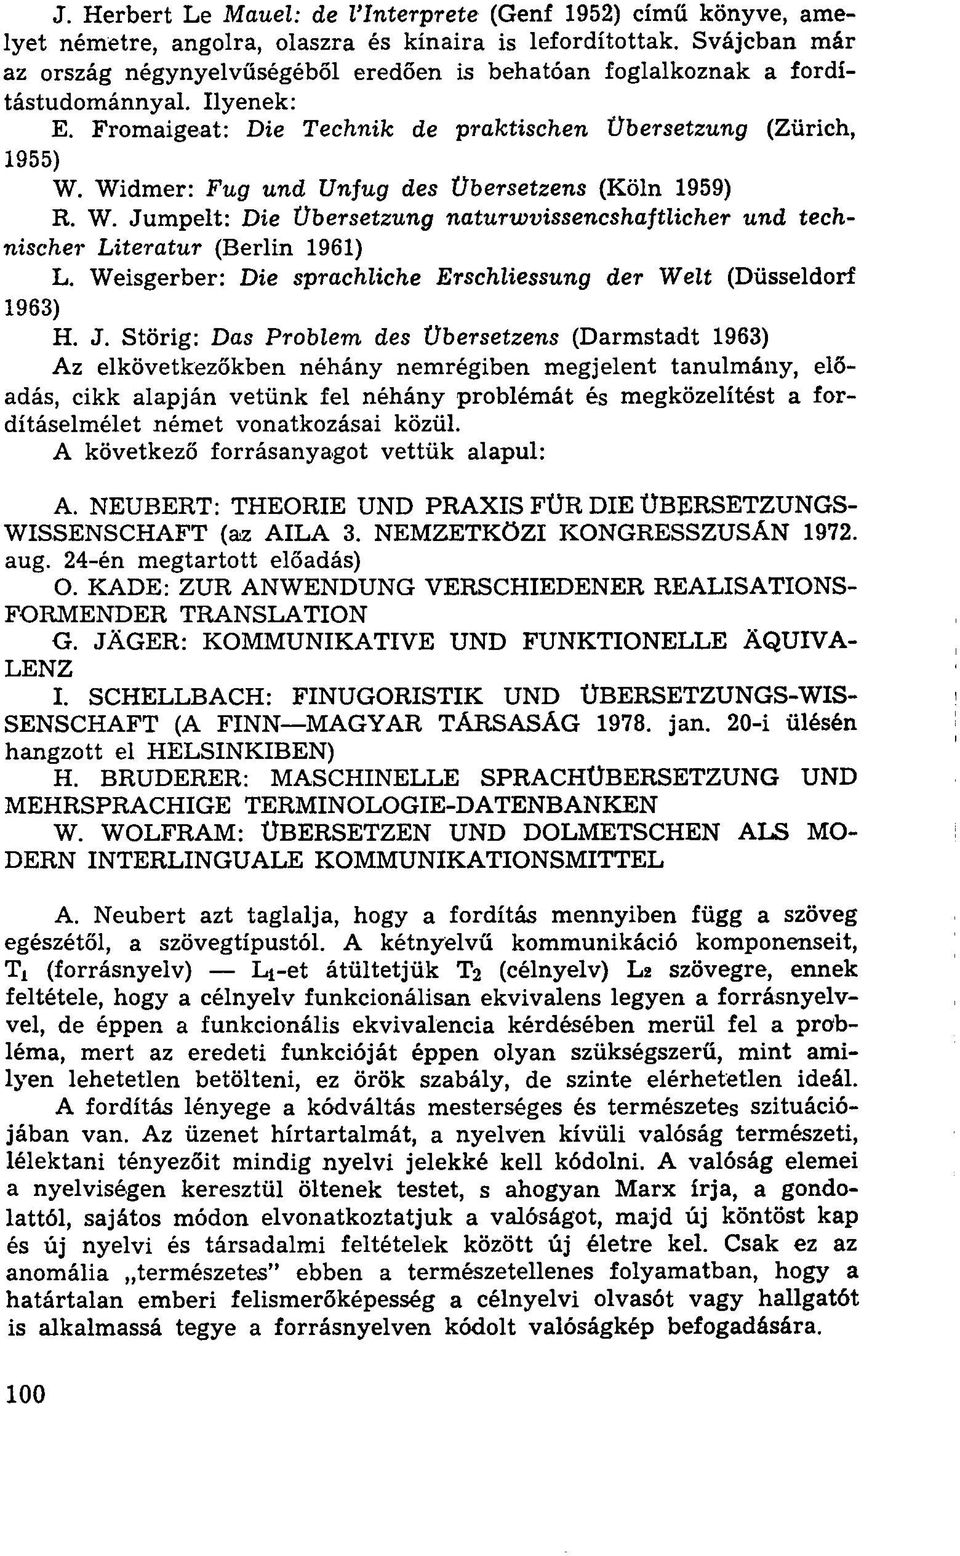 Widmer: Fug und Unfug des Übersetzens (Köln 1959) R. W. Jumpelt: Die Übersetzung naturwvissencshaftlicher und technischer Literatur (Berlin 1961) L.